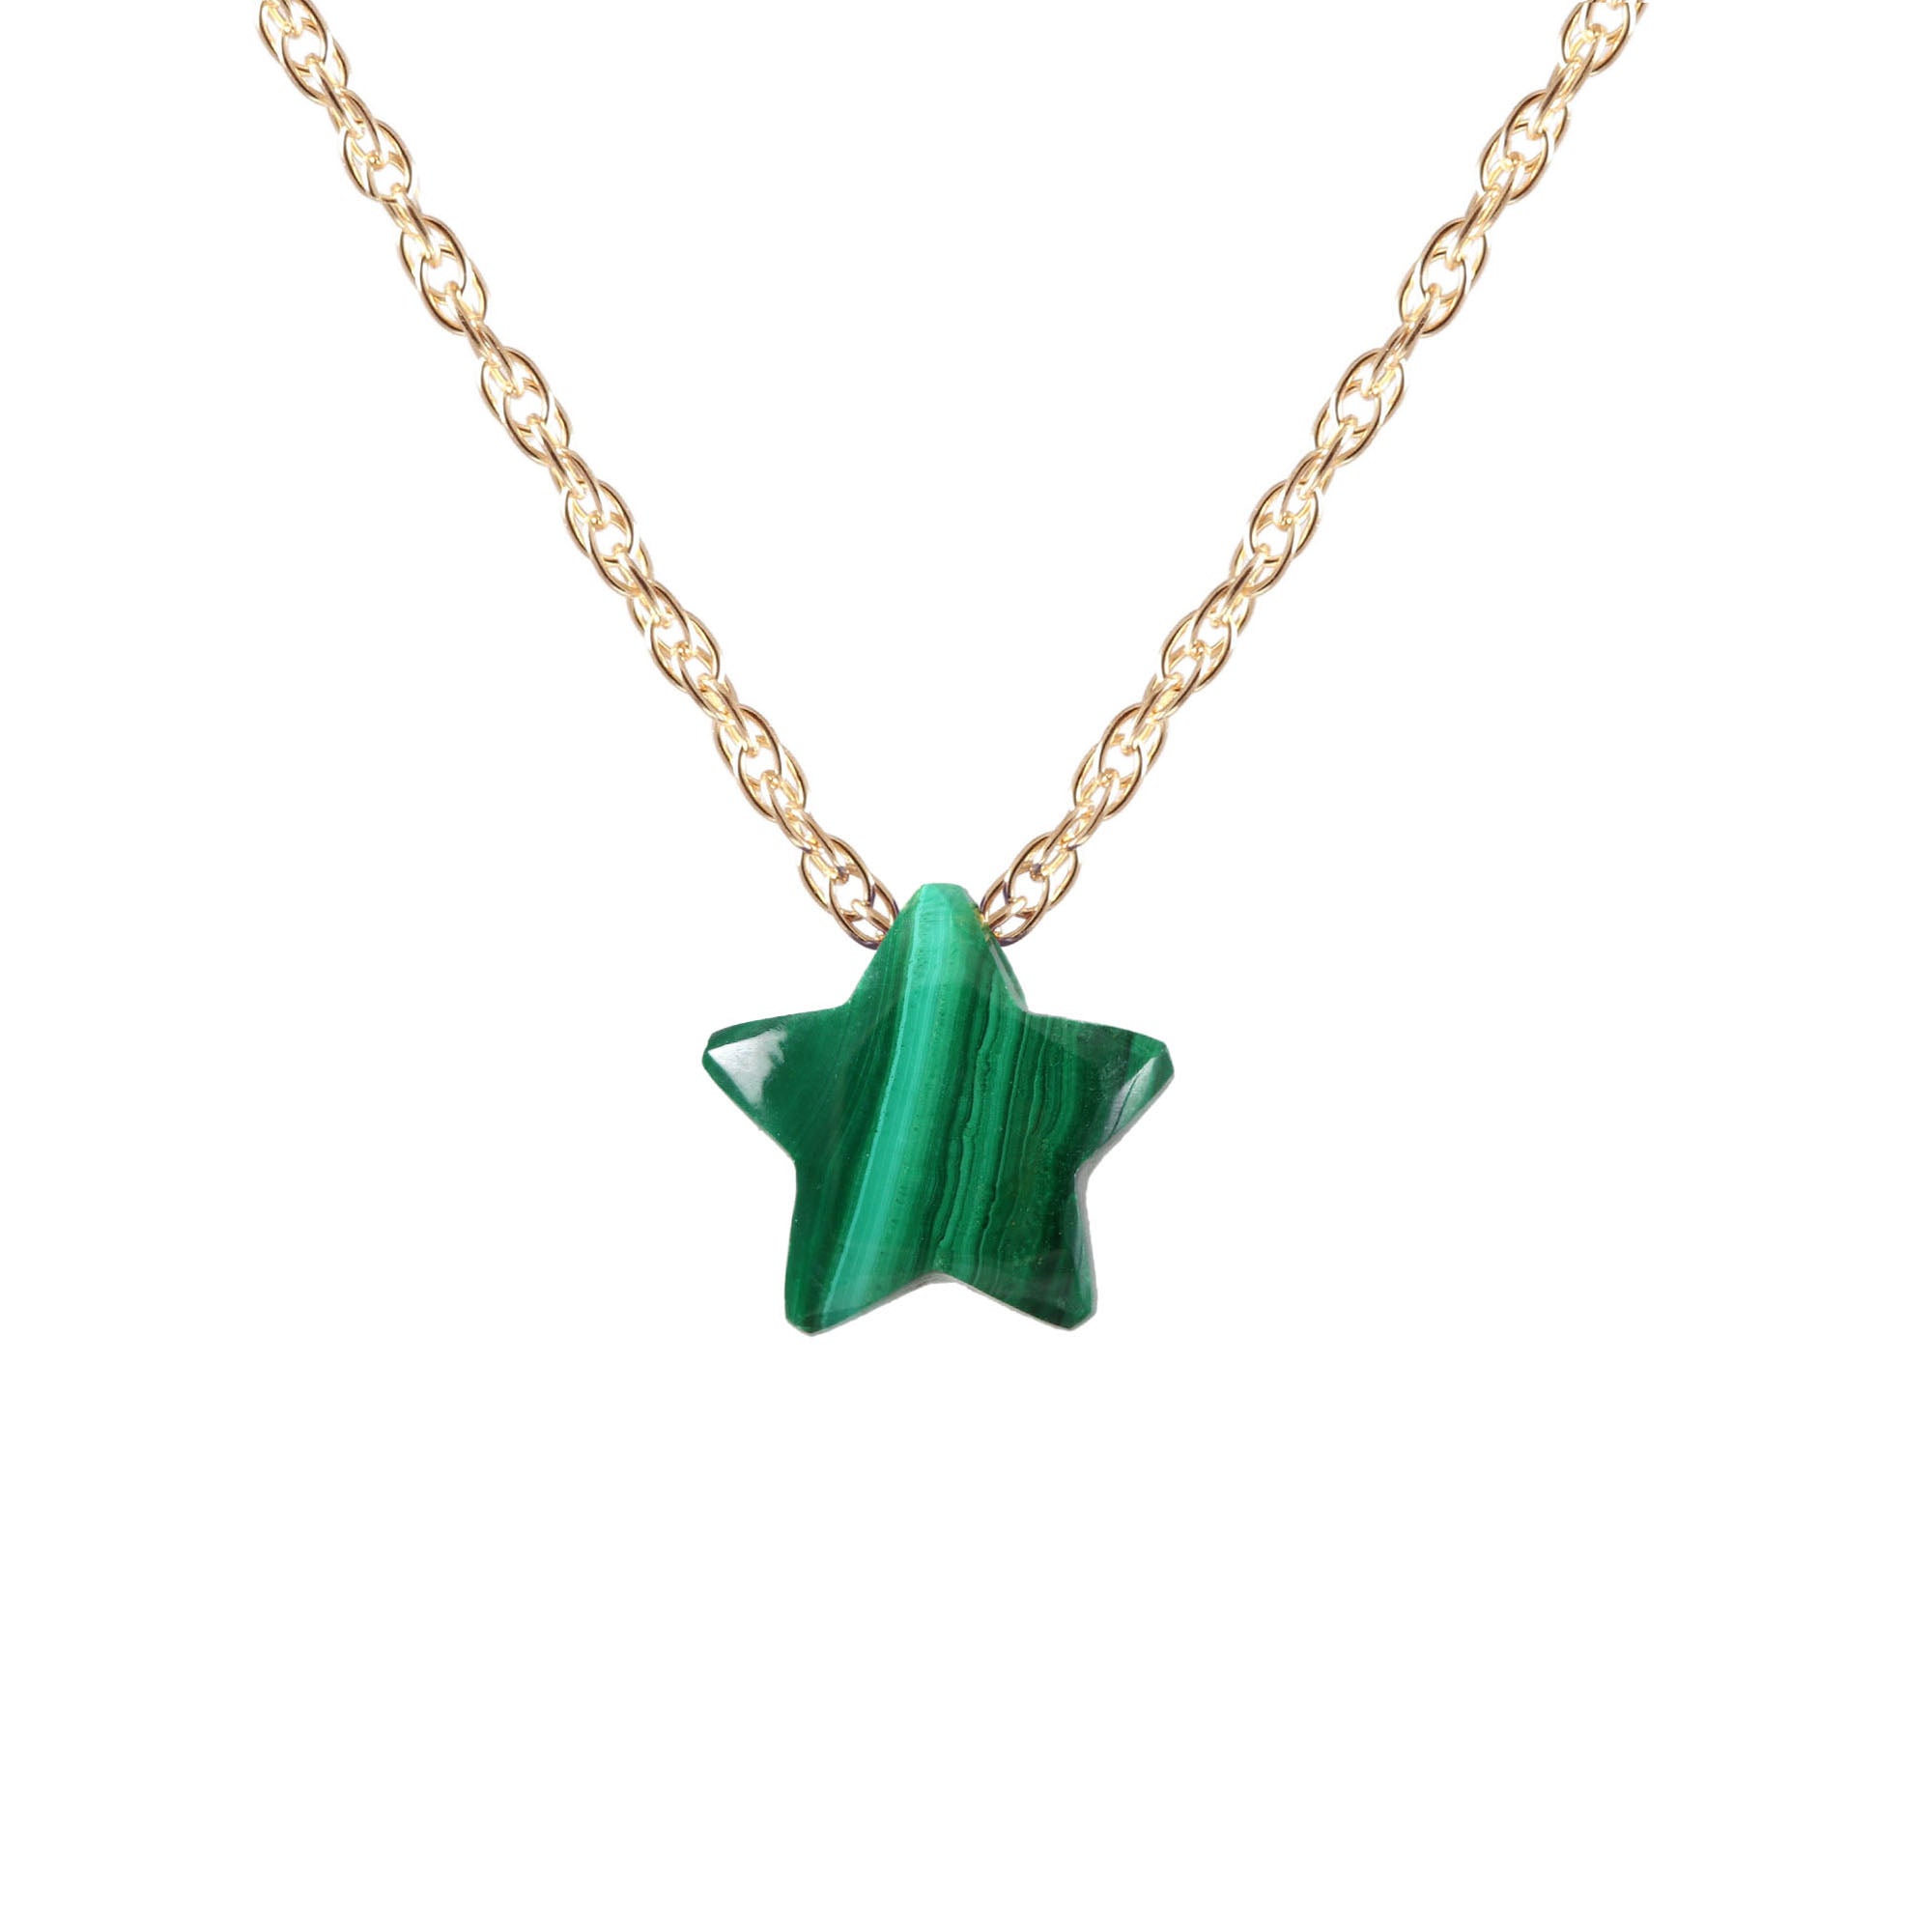 Gemstone Star Necklace